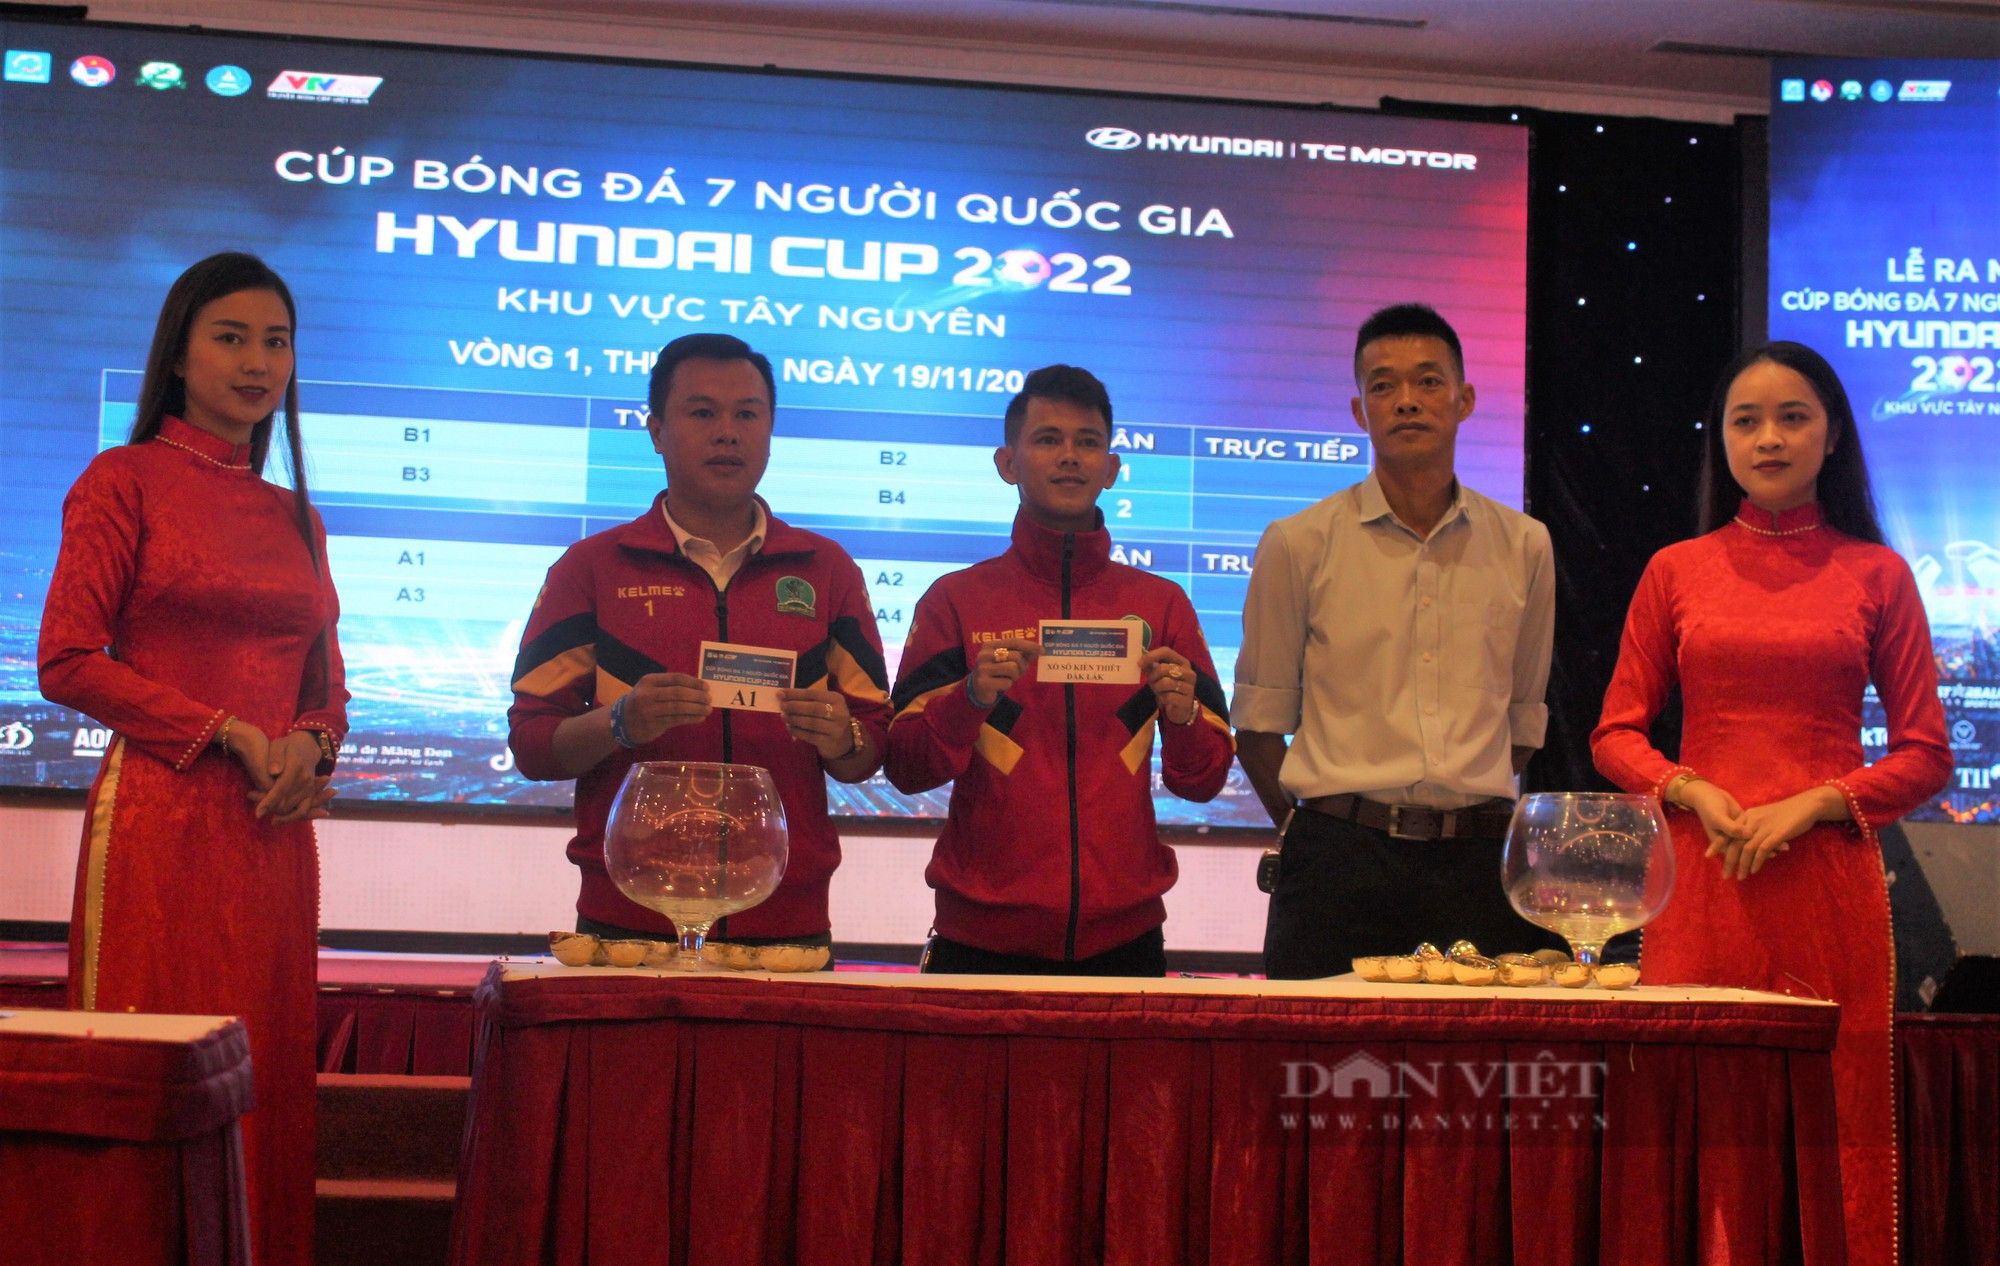 Ra mắt Cup bóng đá 7 người quốc gia Huyndai Cup 2022 khu vực Tây Nguyên - Ảnh 3.